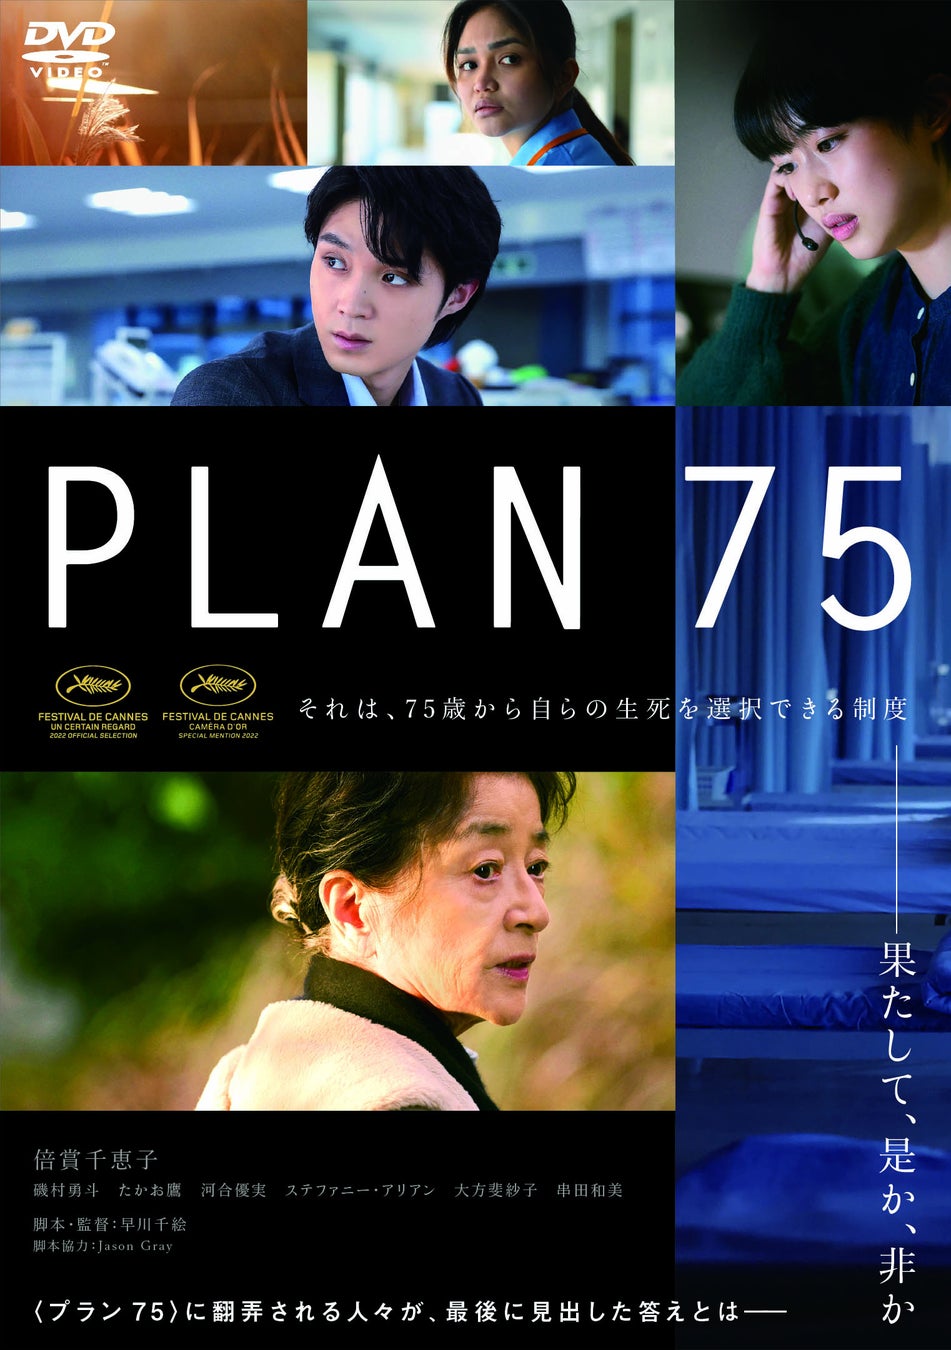 「生きる」という究極のテーマを全世代に問いかける衝撃作！『PLAN 75』Blu-ray＆DVD 4月26日(水)発売決定！